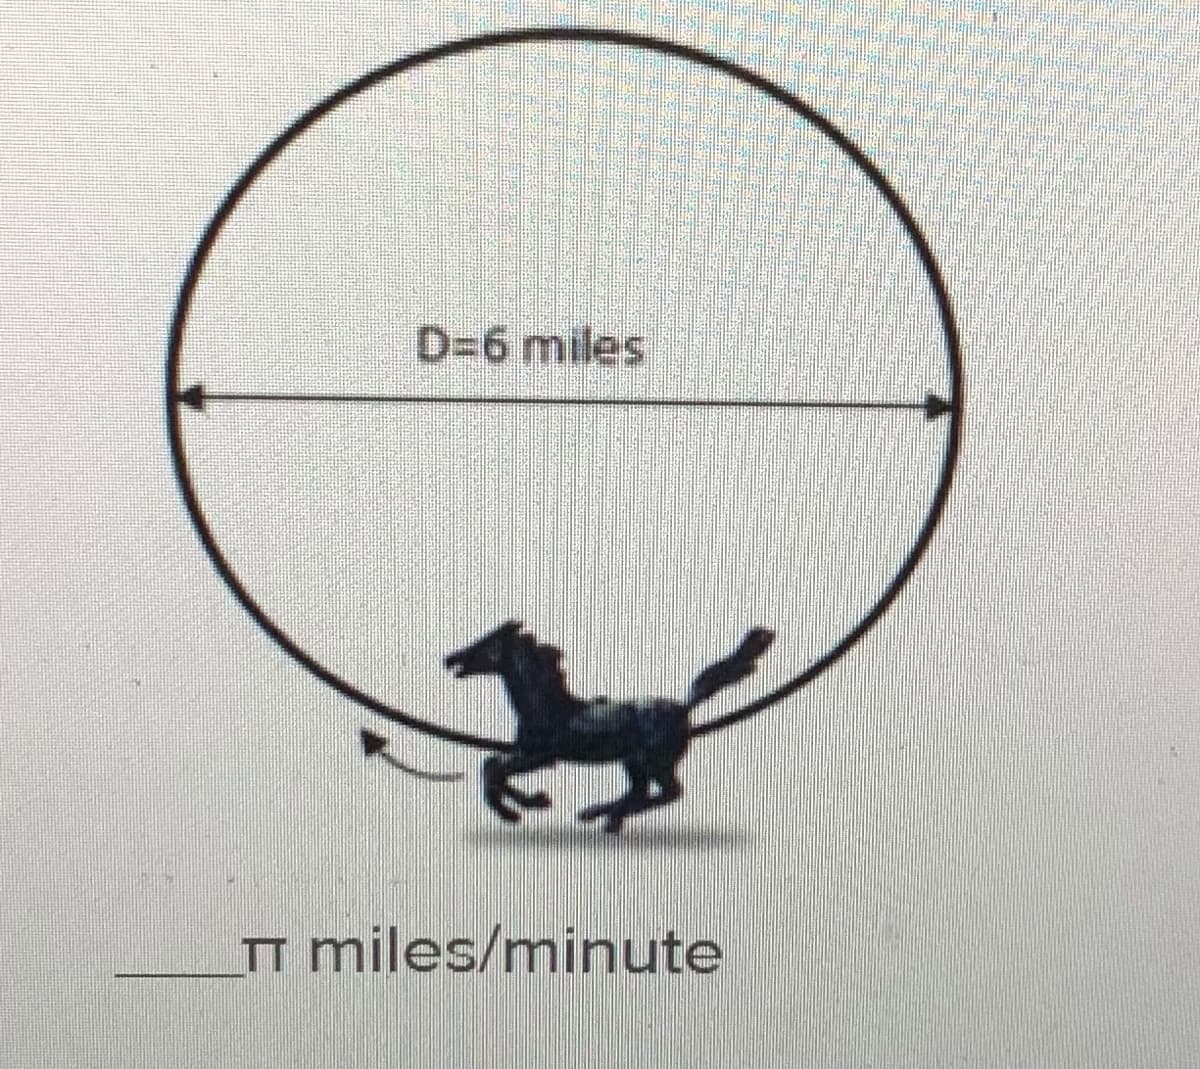 D36 miles
T miles/minute
